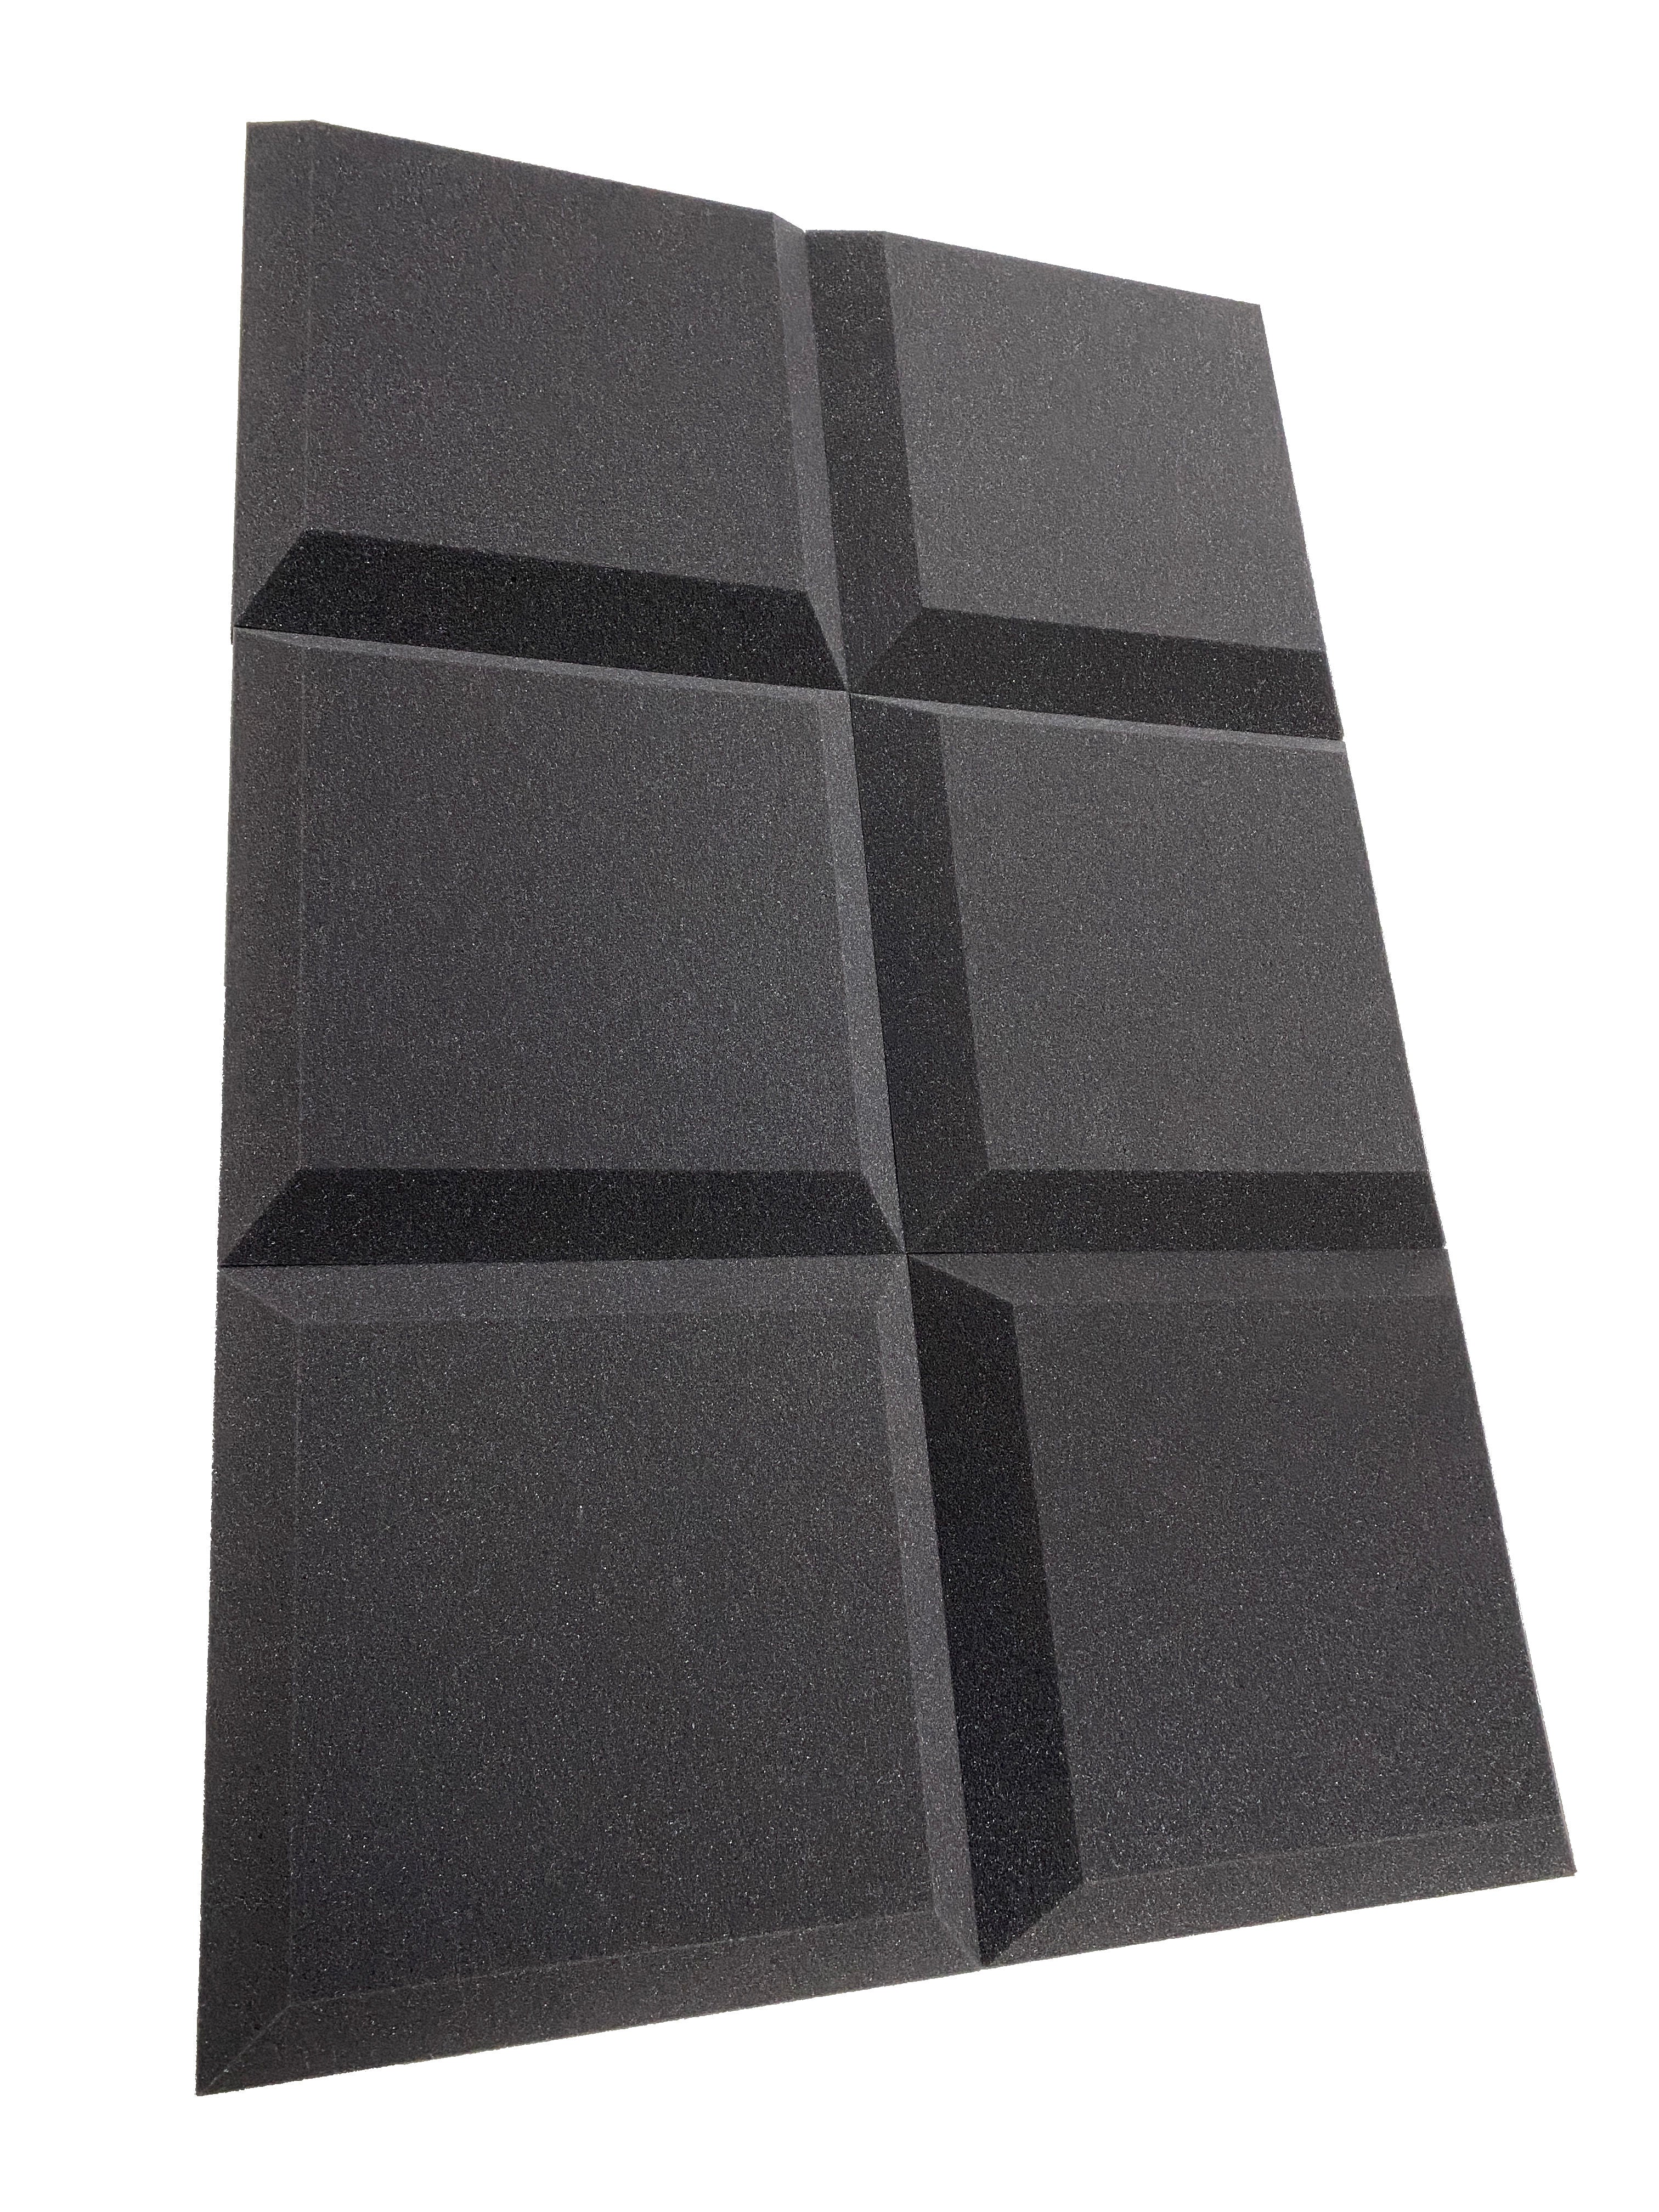 Tegular 12" Acoustic Studio Foam Tile Pack